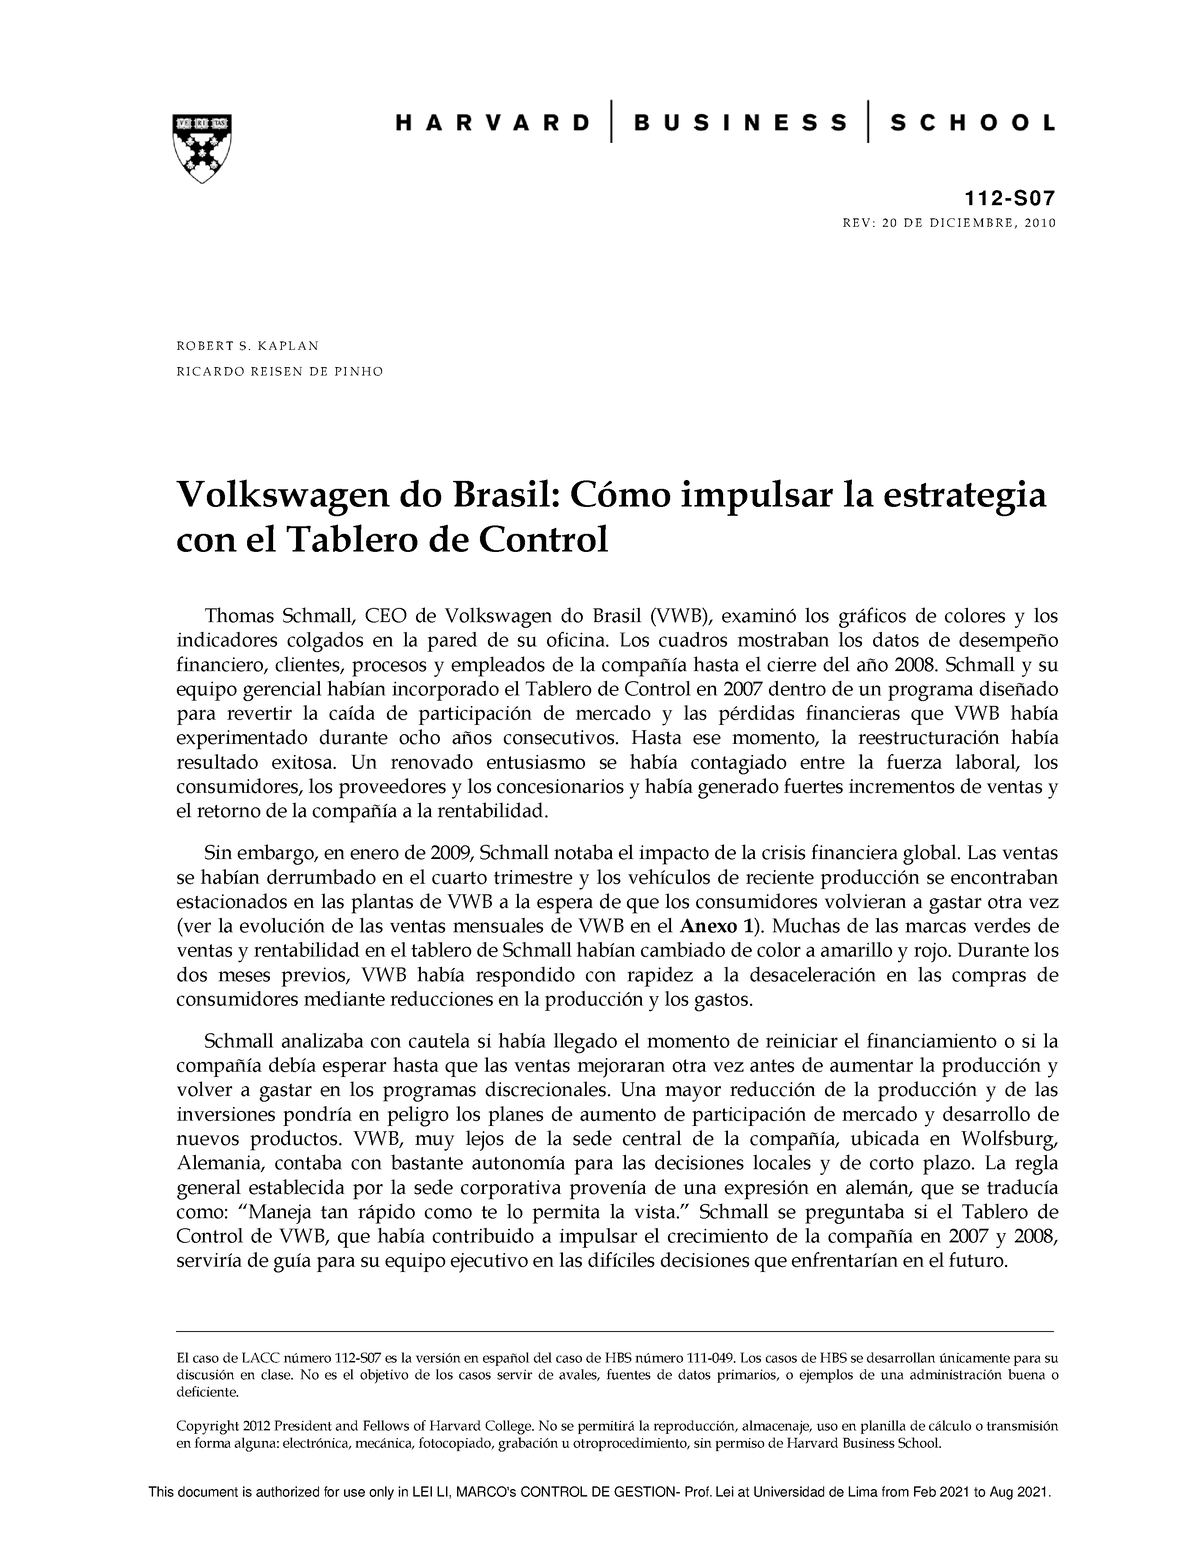 volkswagen do brasil case study solution